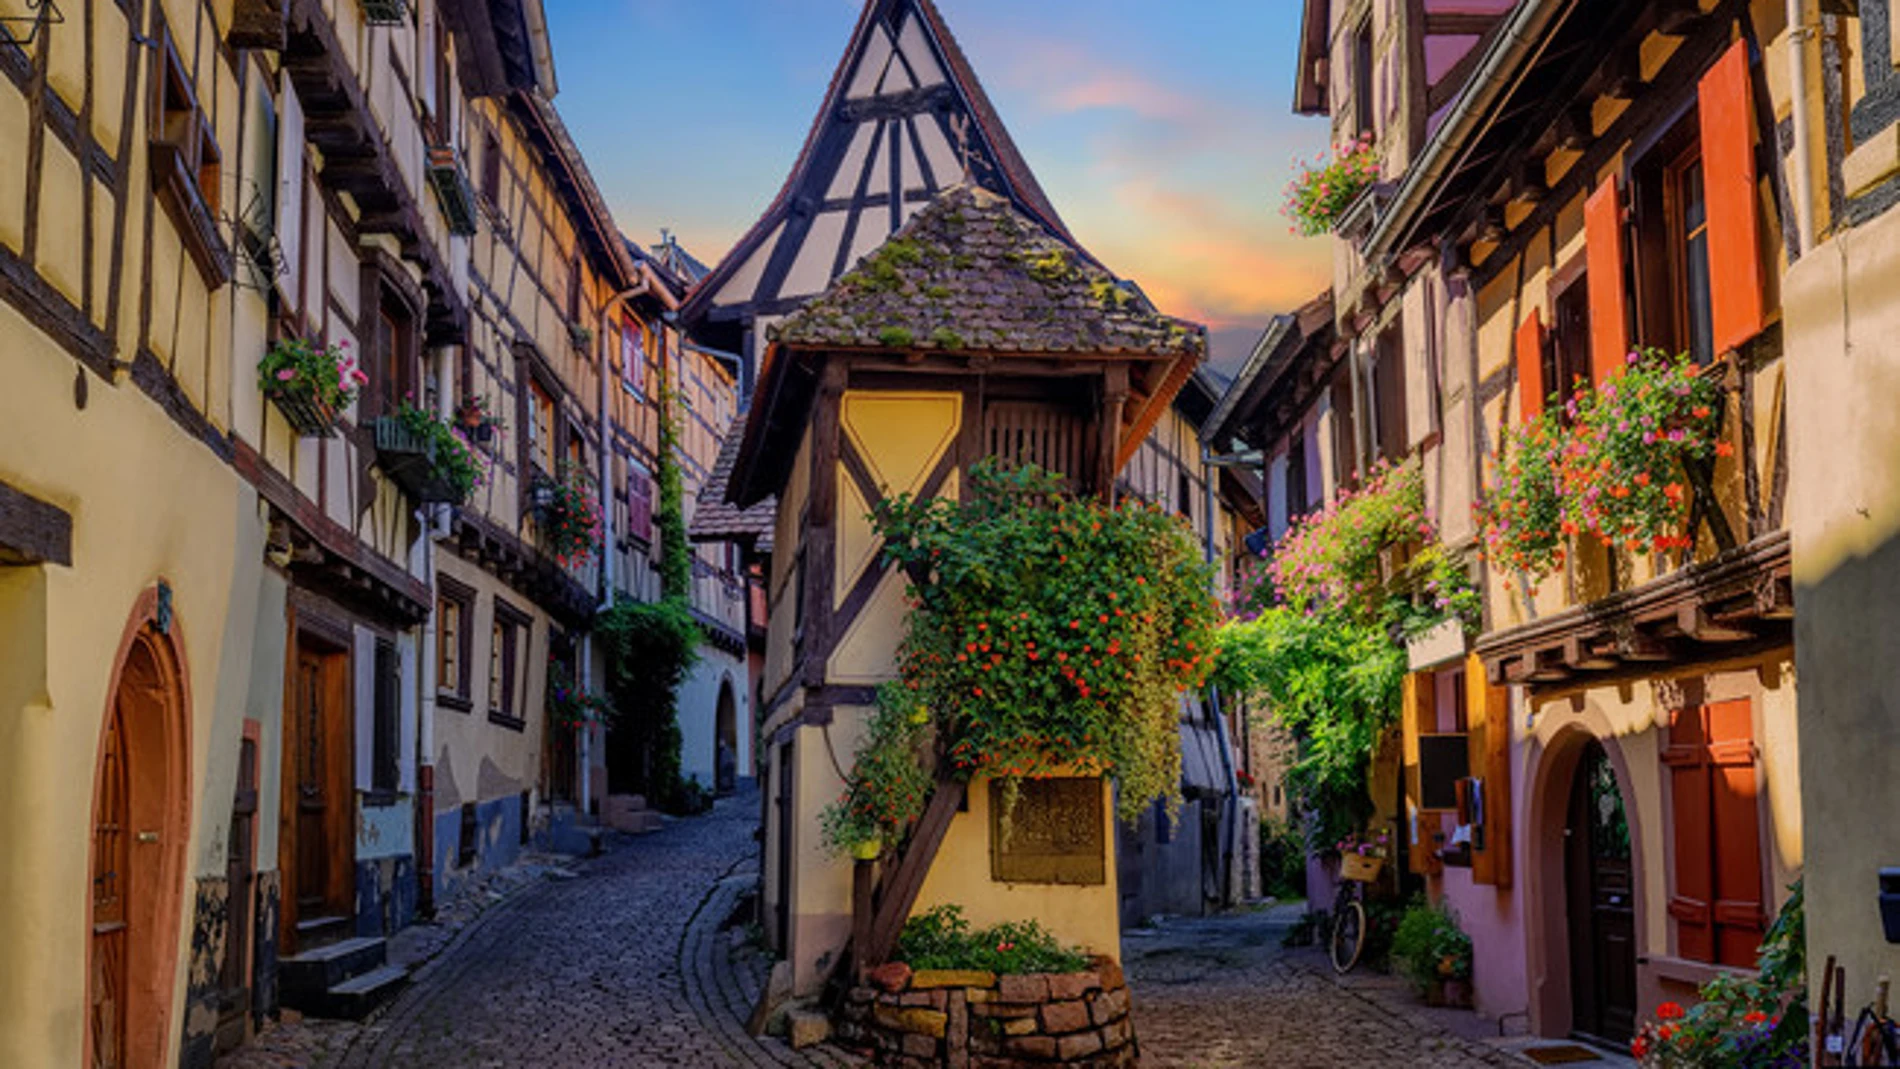 Fotografía de Eguisheim, Francia. El pueblo que sirvió de inspiración para la Bella y la Bestia